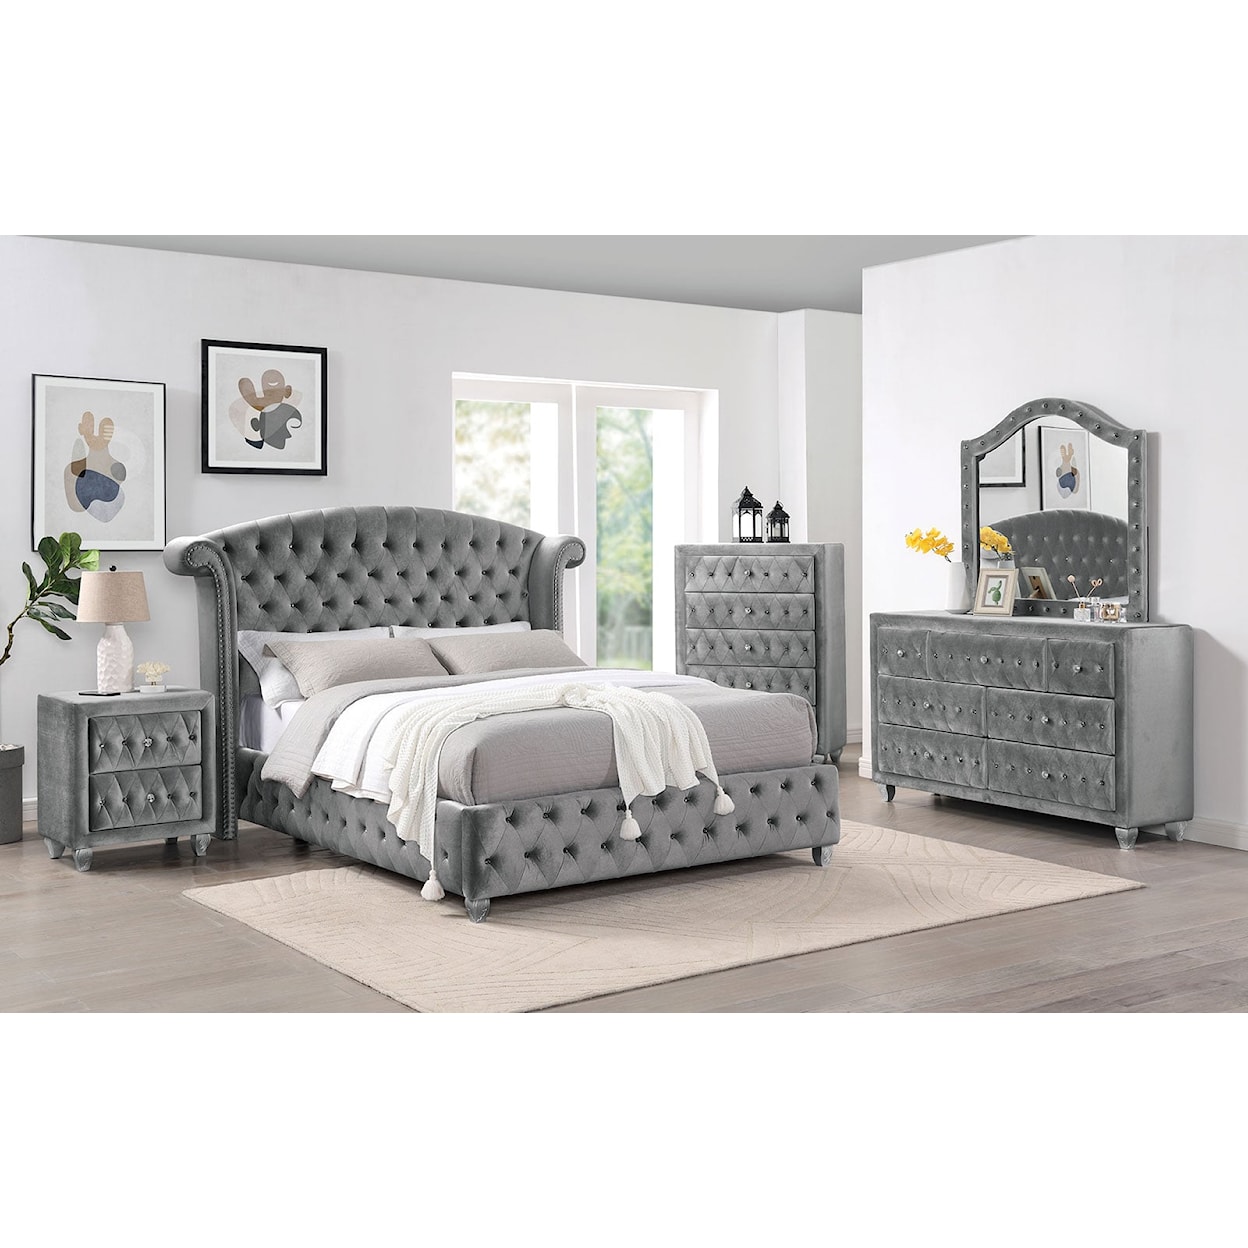 Furniture of America Zohar 5-Piece Queen Bedroom Set with 2 Nightstands